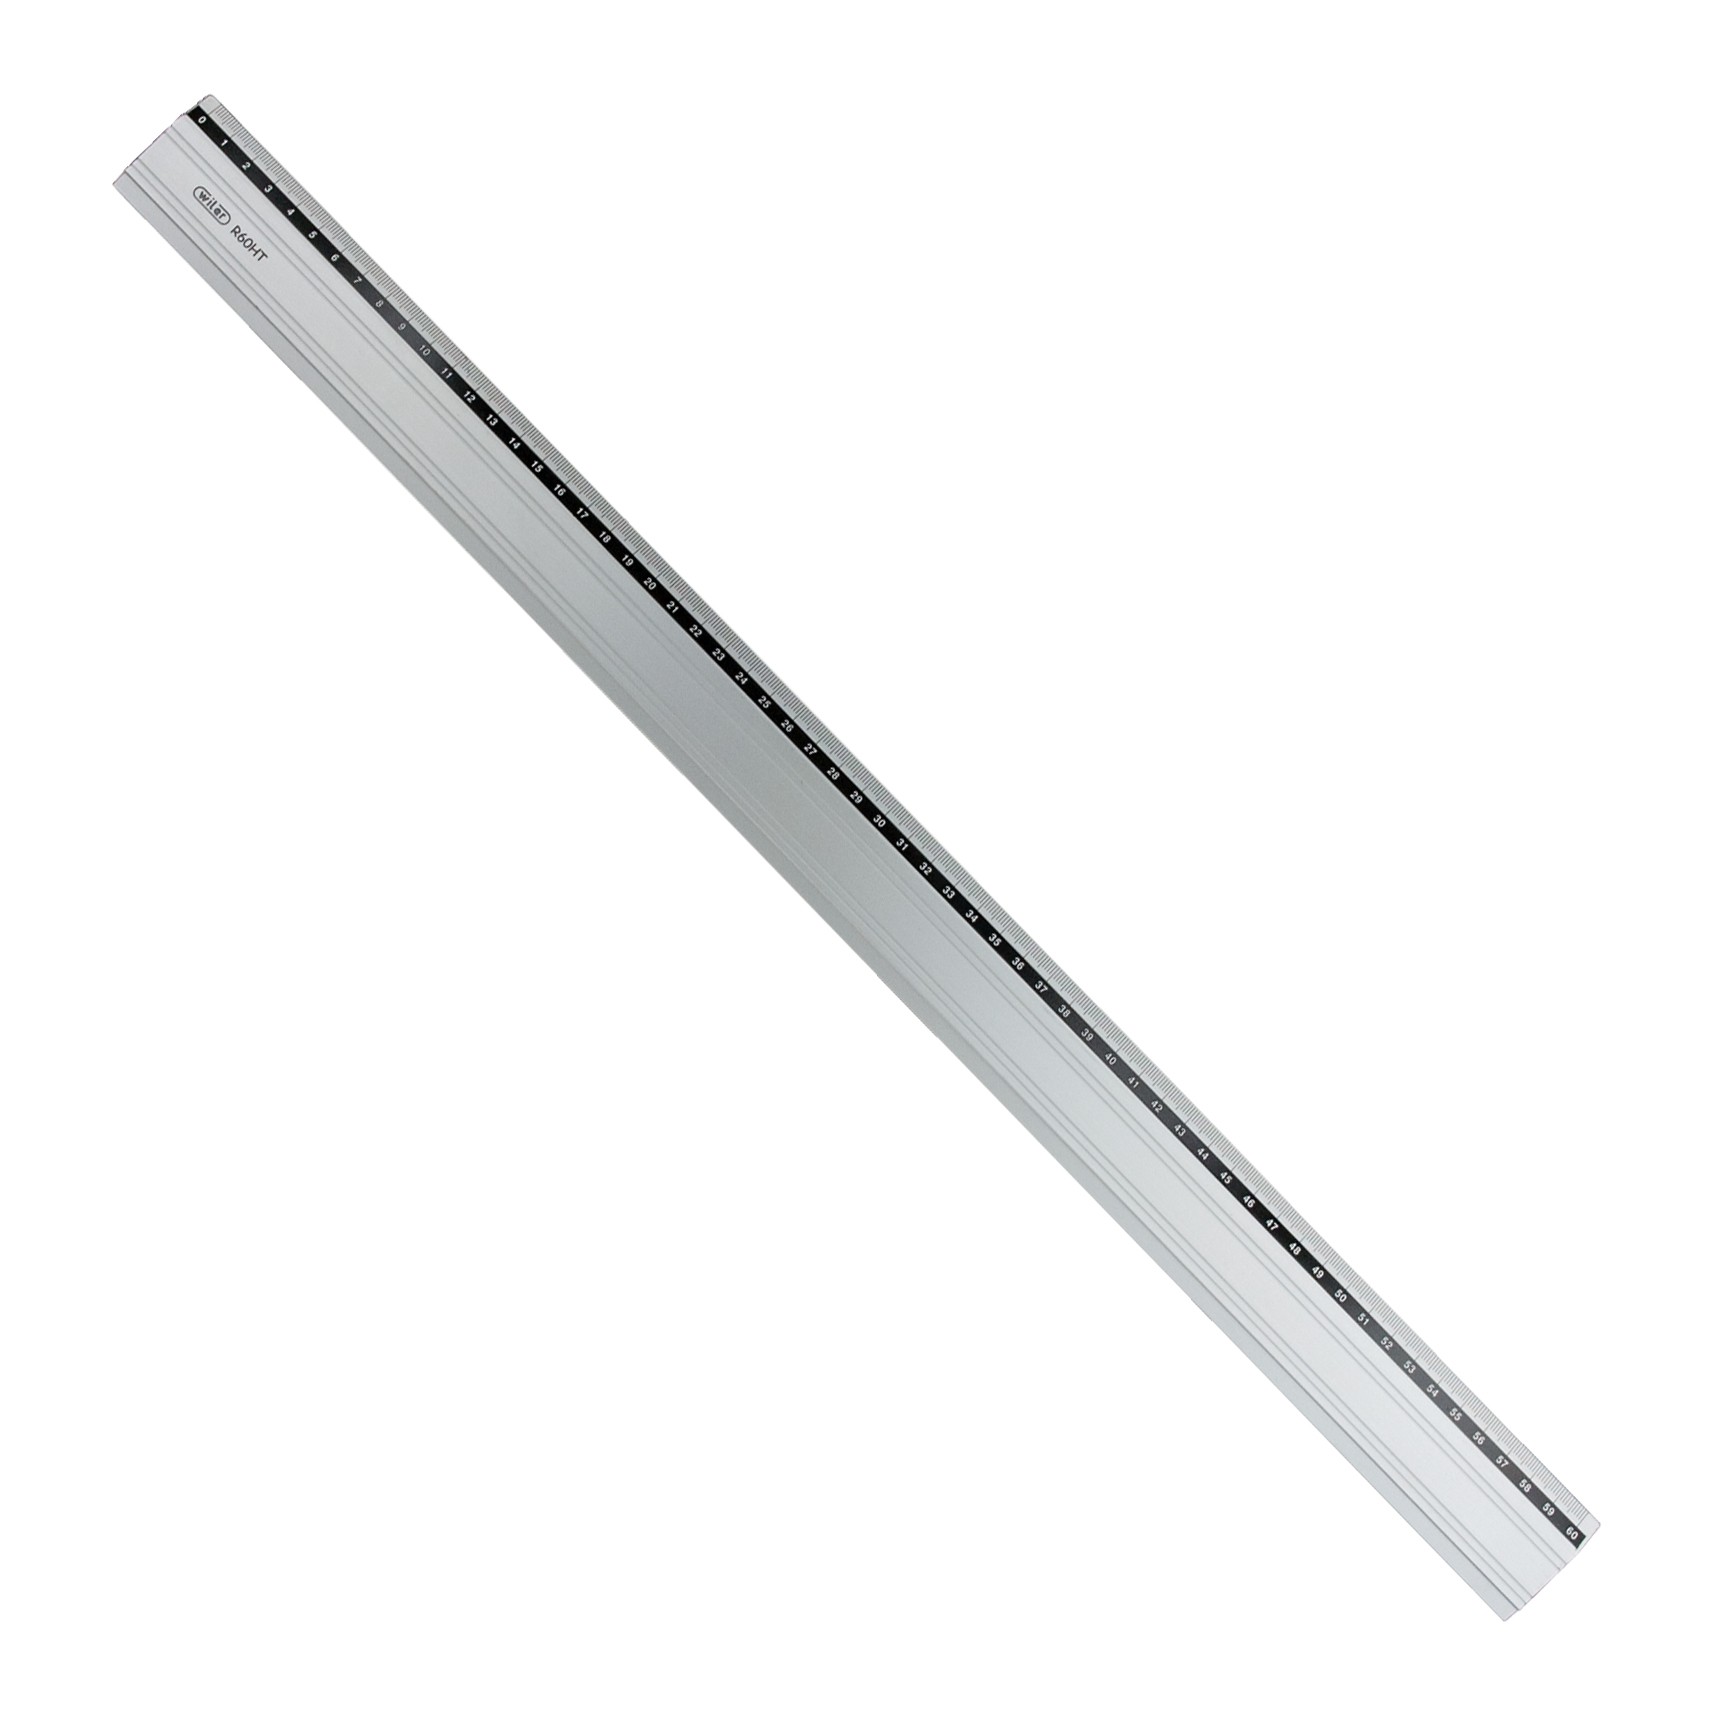 RIga in Alluminio 60cm con gomma antiscivolo - Wiler R60HT